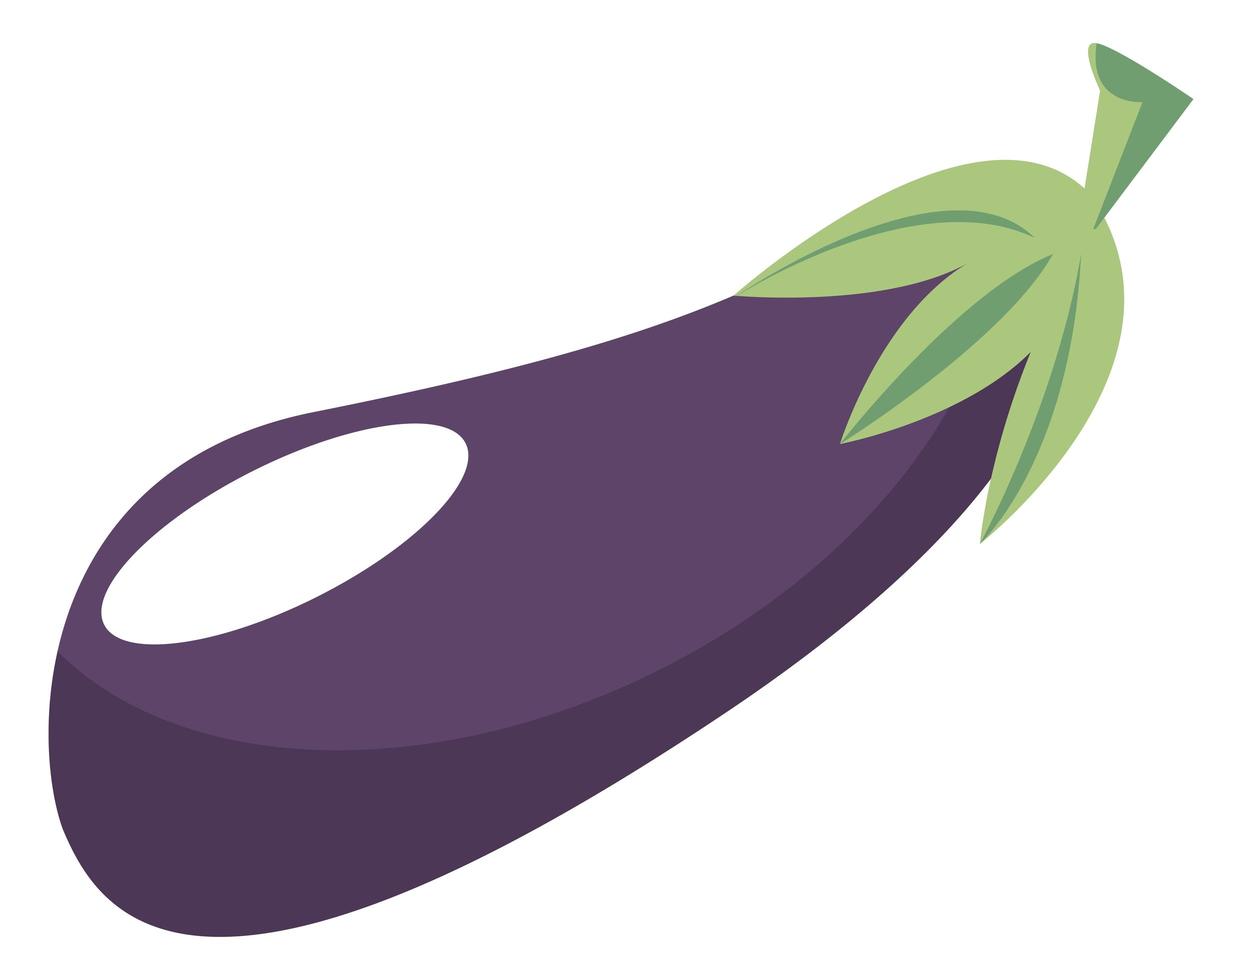 eggplant vegetable icon vector